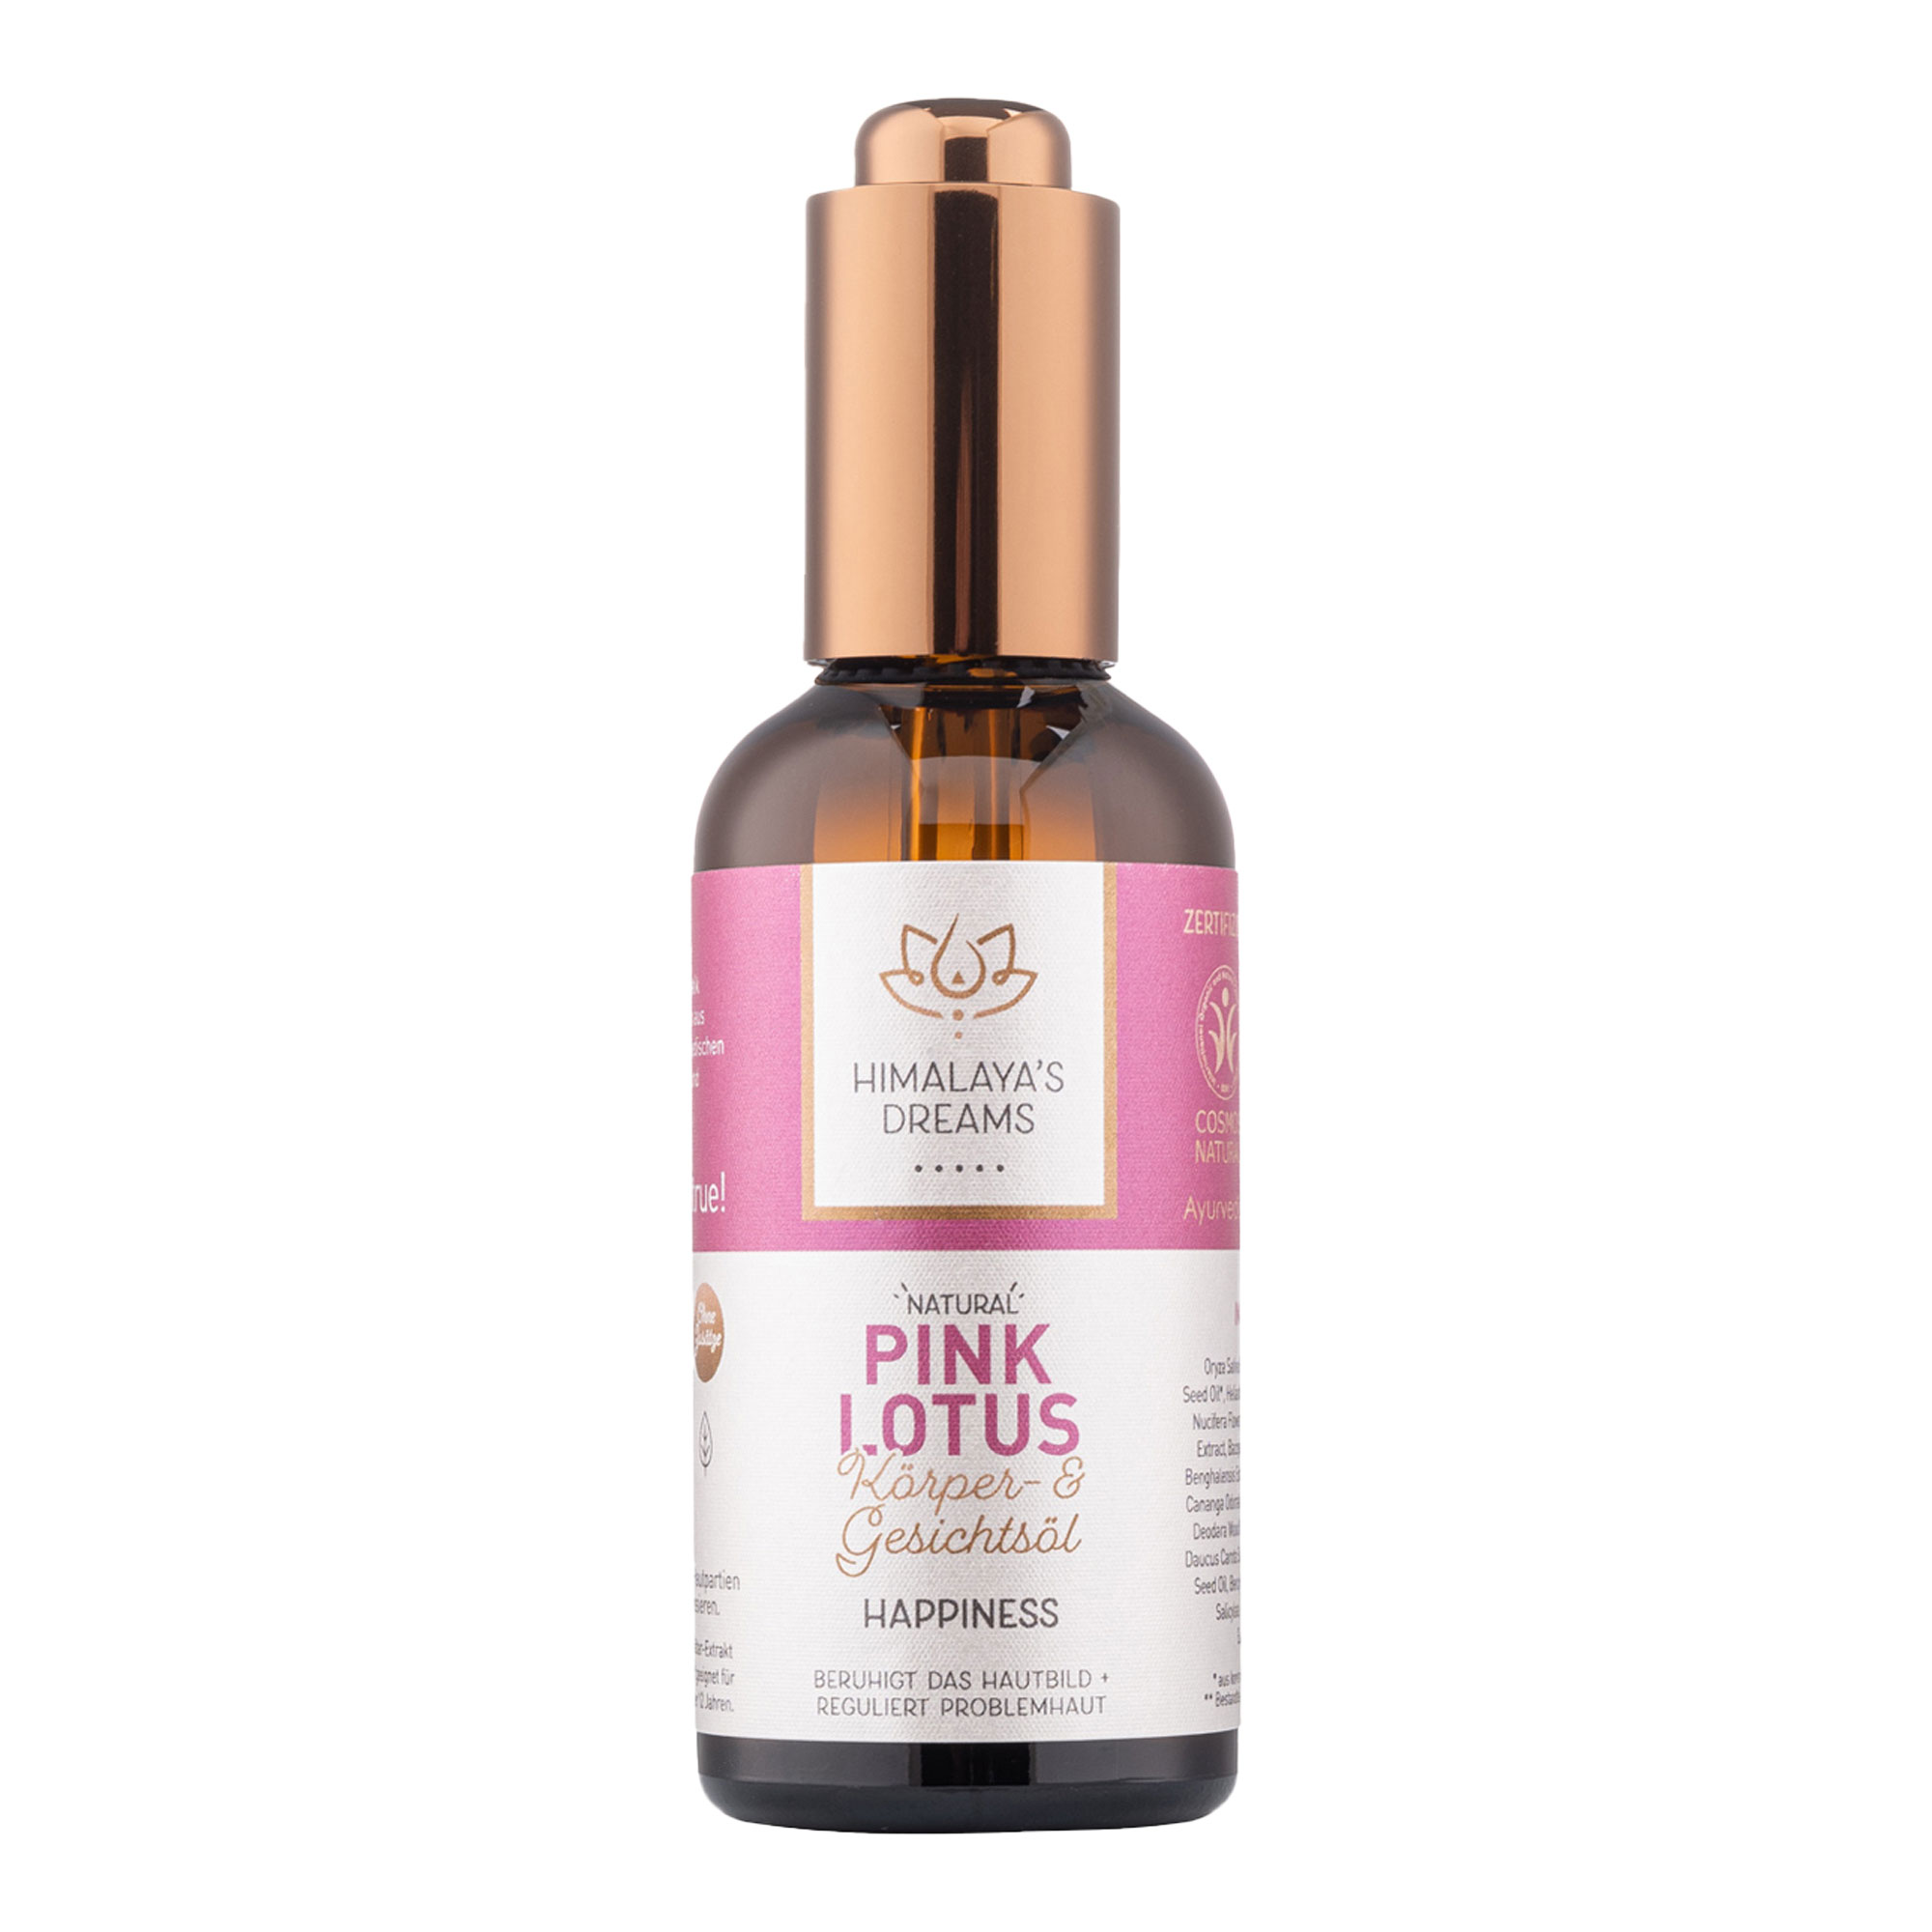 Dieses pflegende Öl mit Pink Lotus als Feuchtigkeitsspender hilft trockene Haut weich und geschmeidig zu machen.